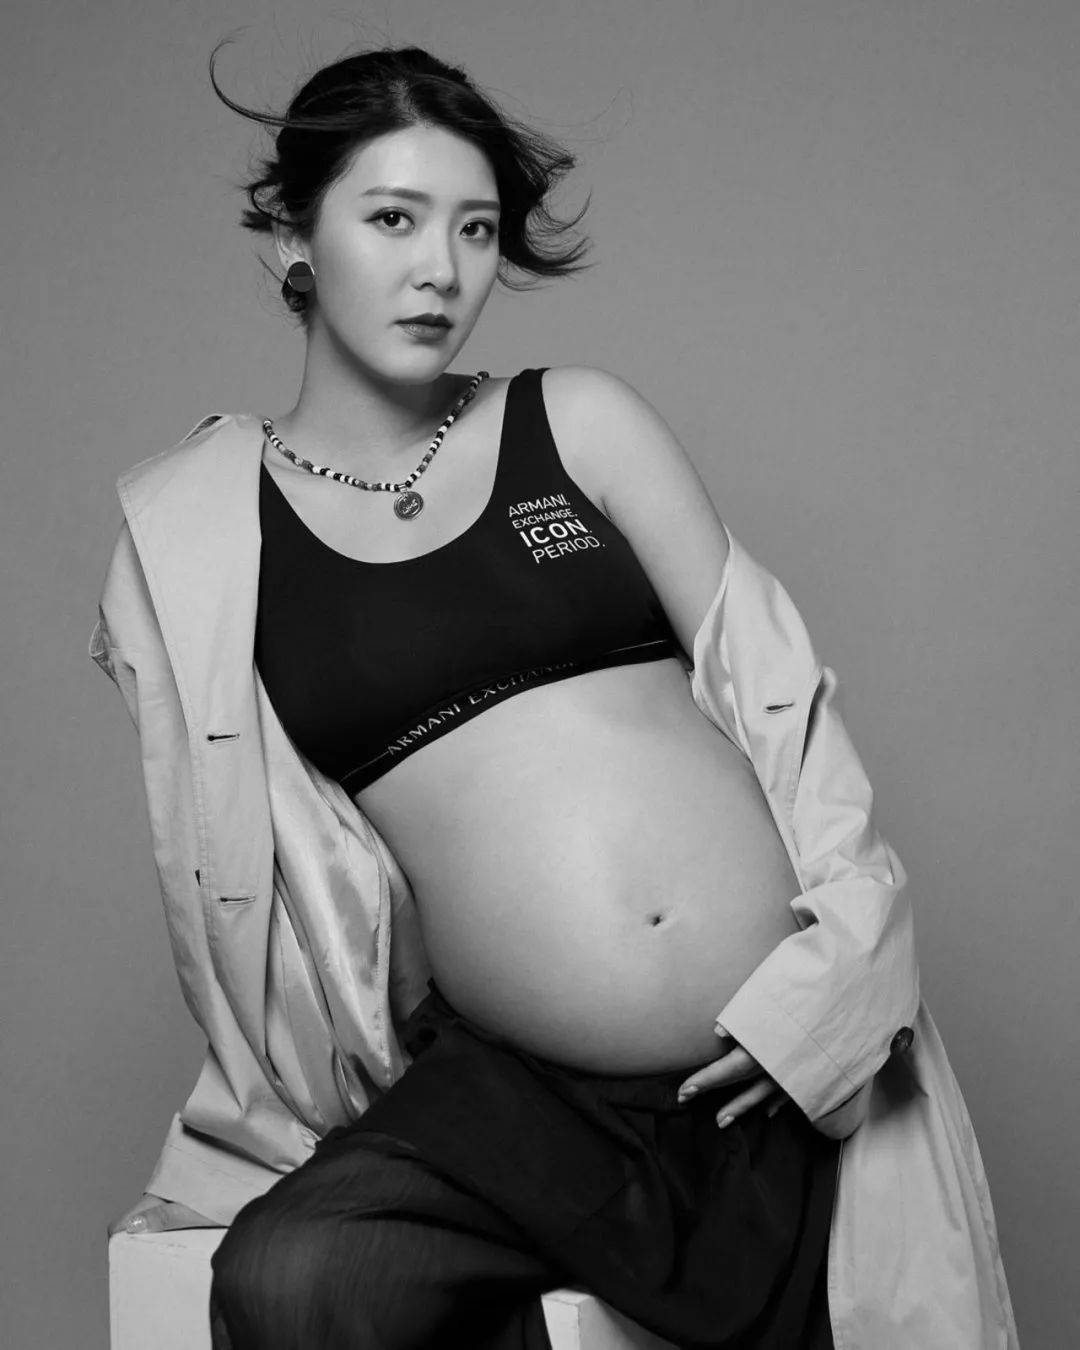 原创卸货在即27岁香港女星晒最新孕照留纪念夜半惊醒感慨母爱伟大